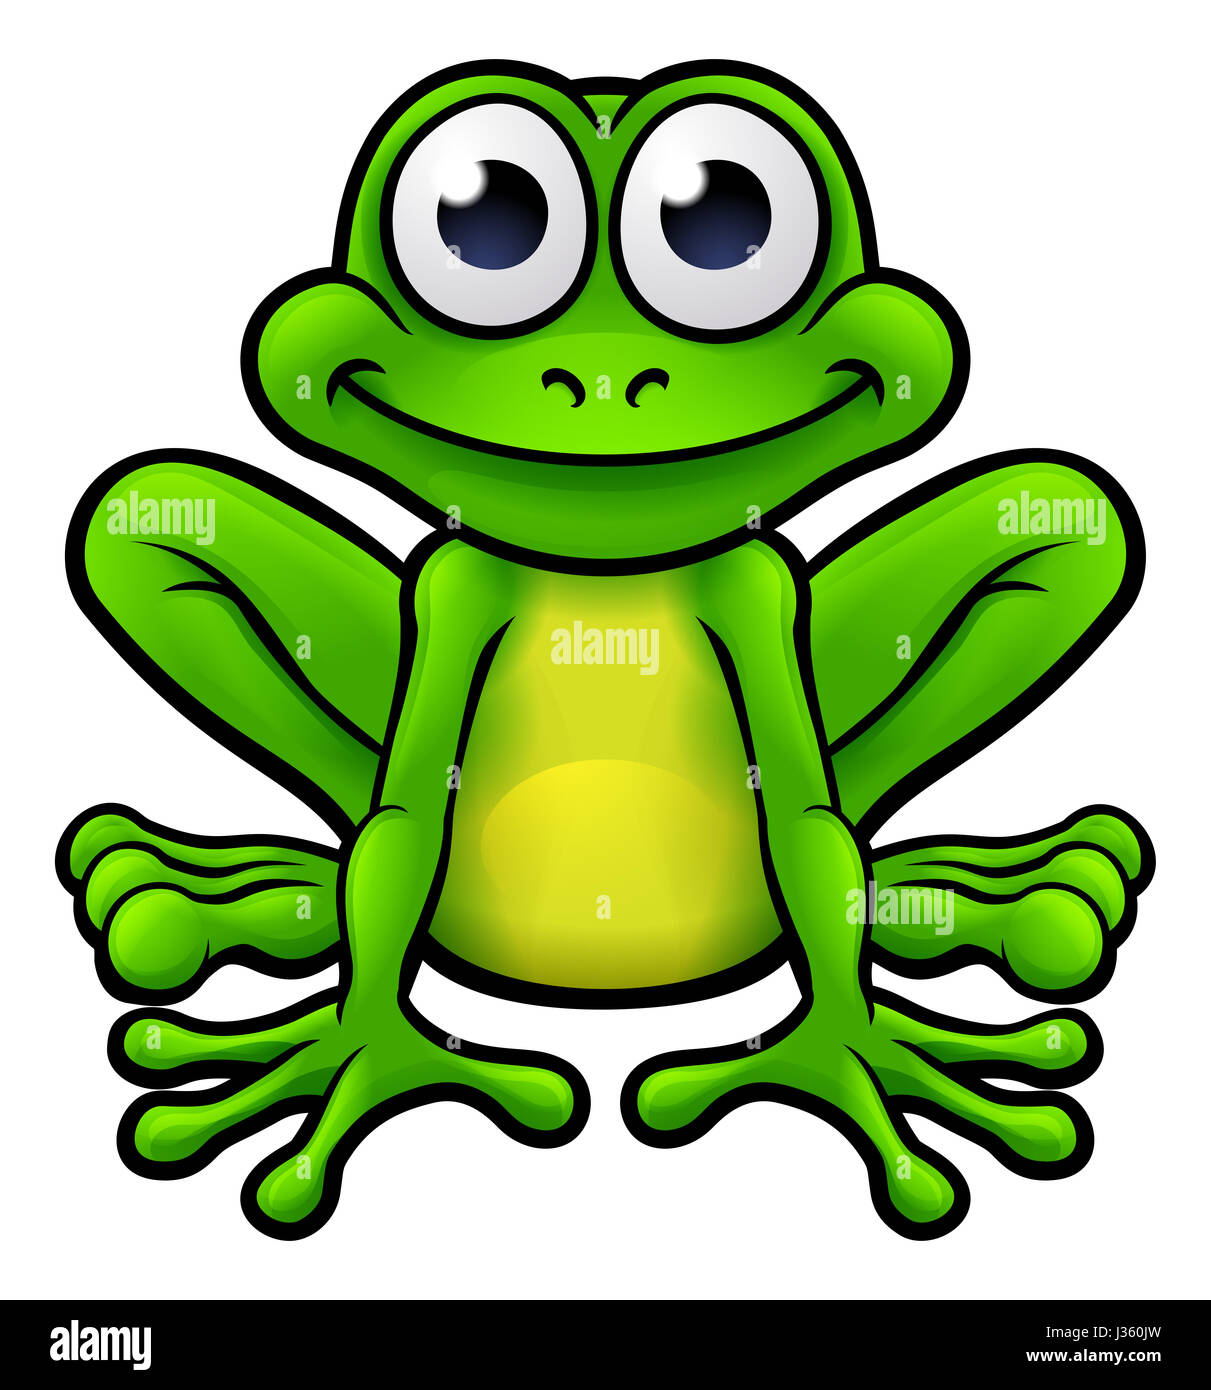 Ein Beispiel für eine niedliche Frosch-Cartoon-Figur Stockfotografie - Alamy